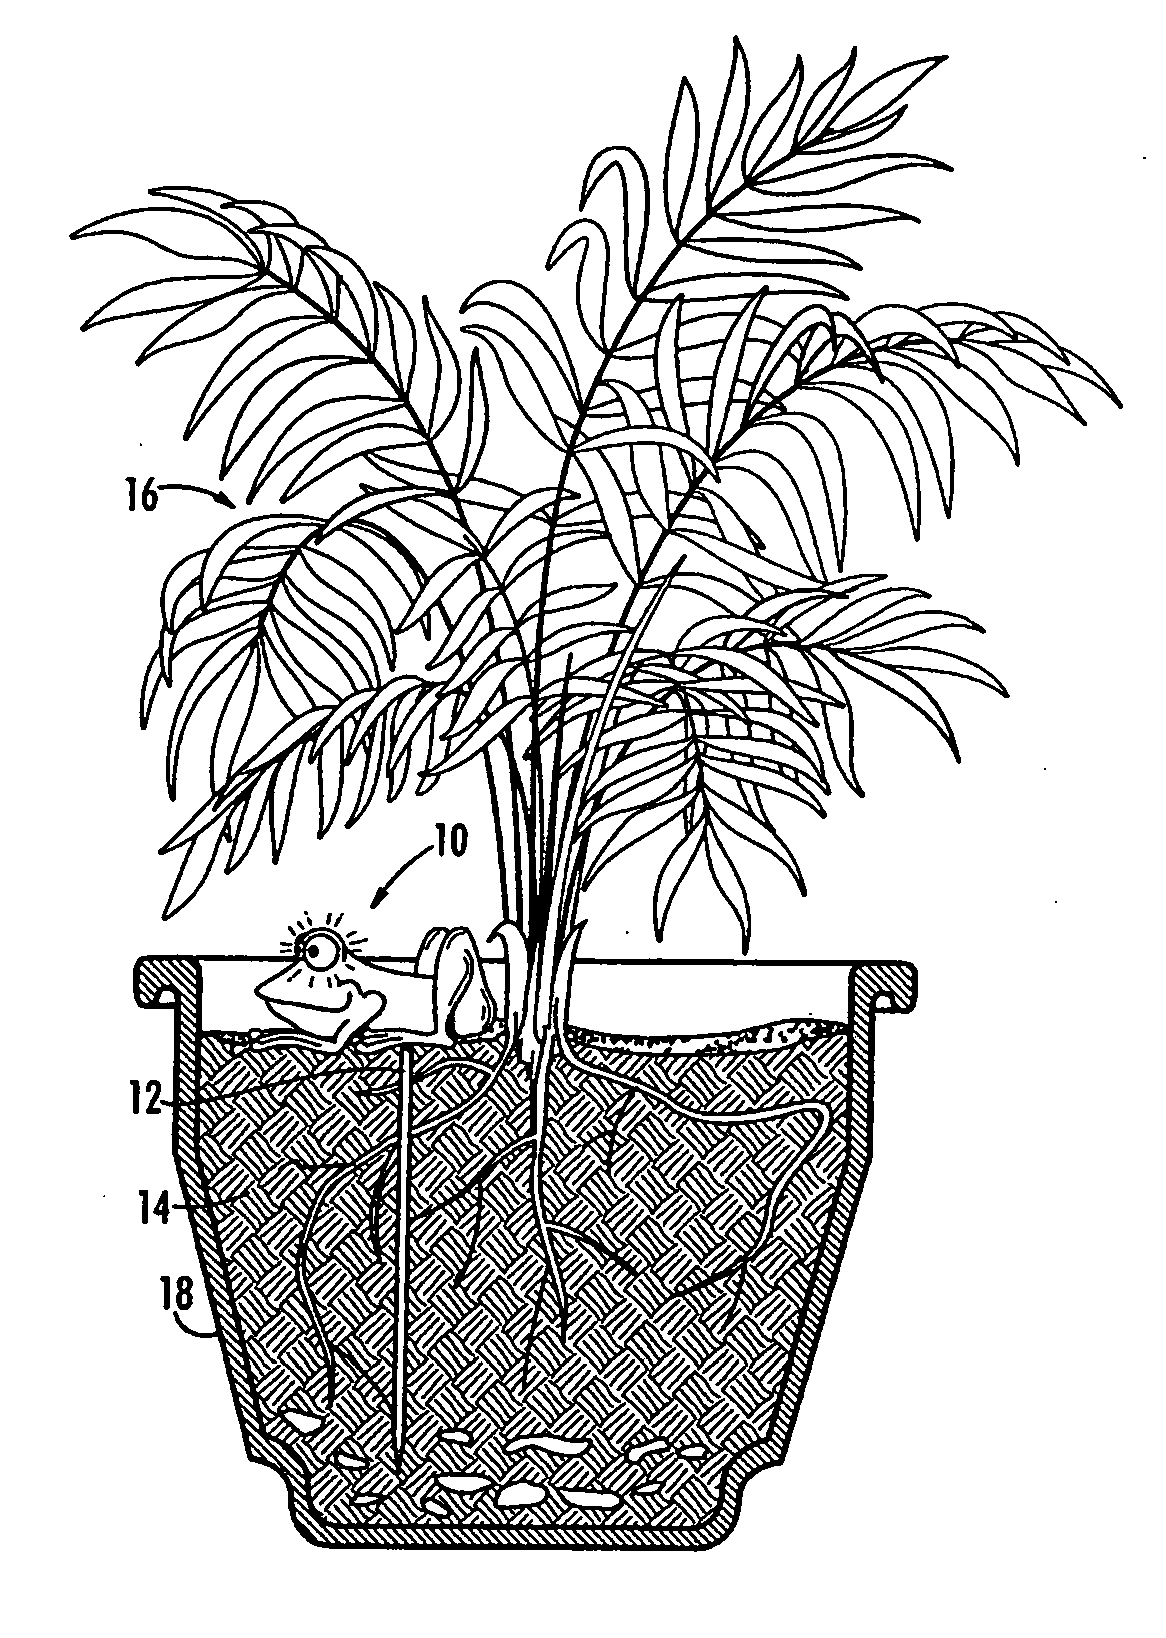 Novelty moisture detector for plants